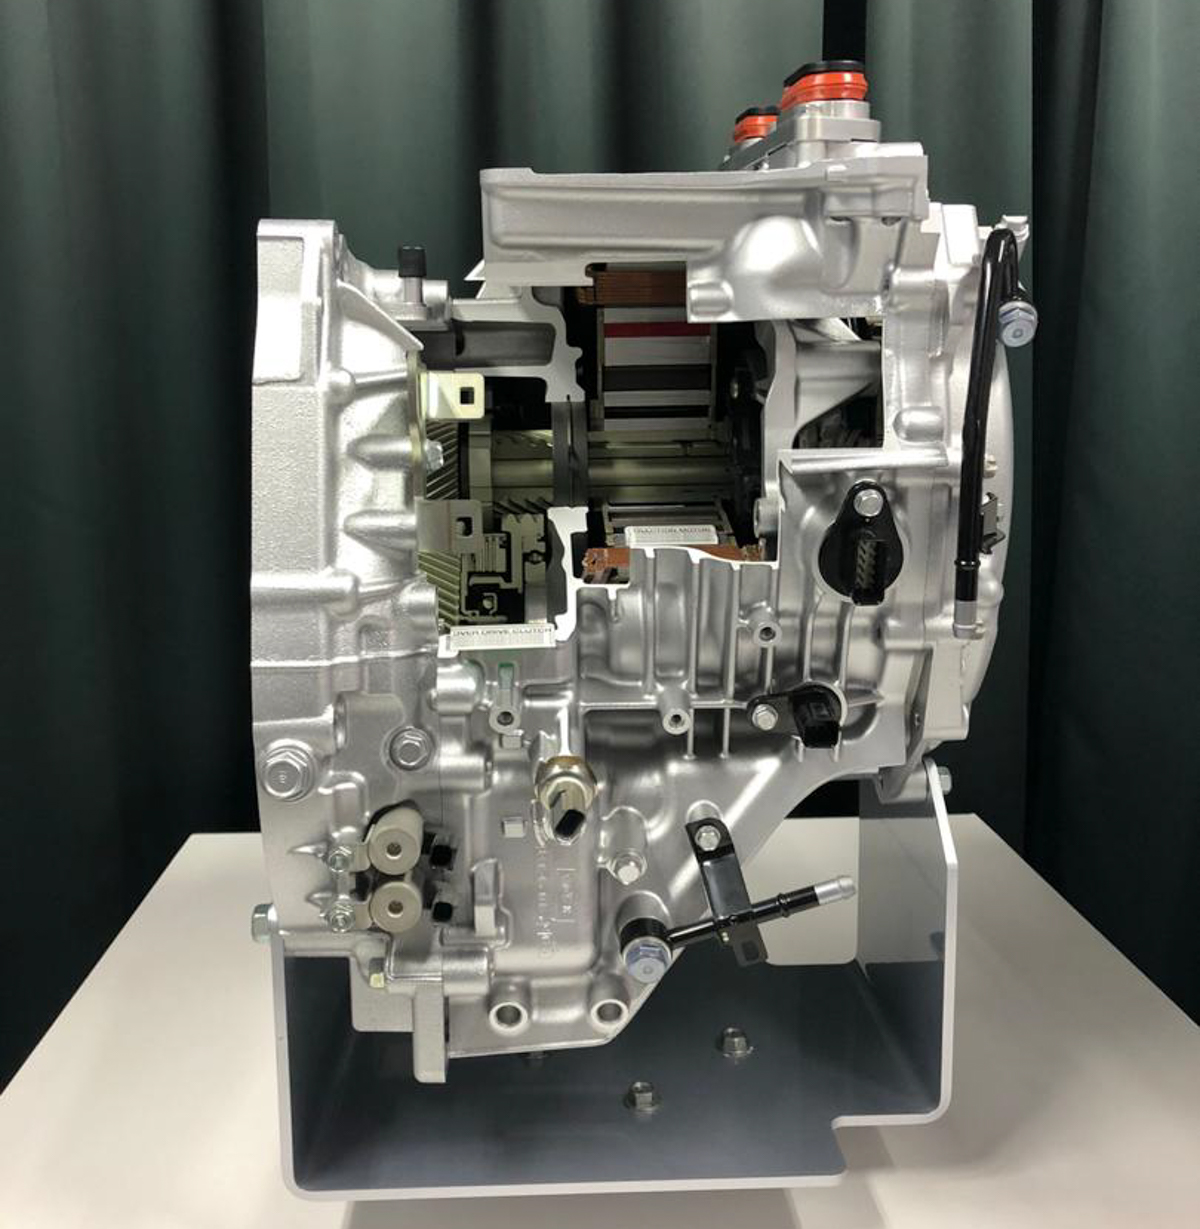 新一代 Honda Fit 的 1.5L+i-MMD 混合动力引擎究竟有什么特别